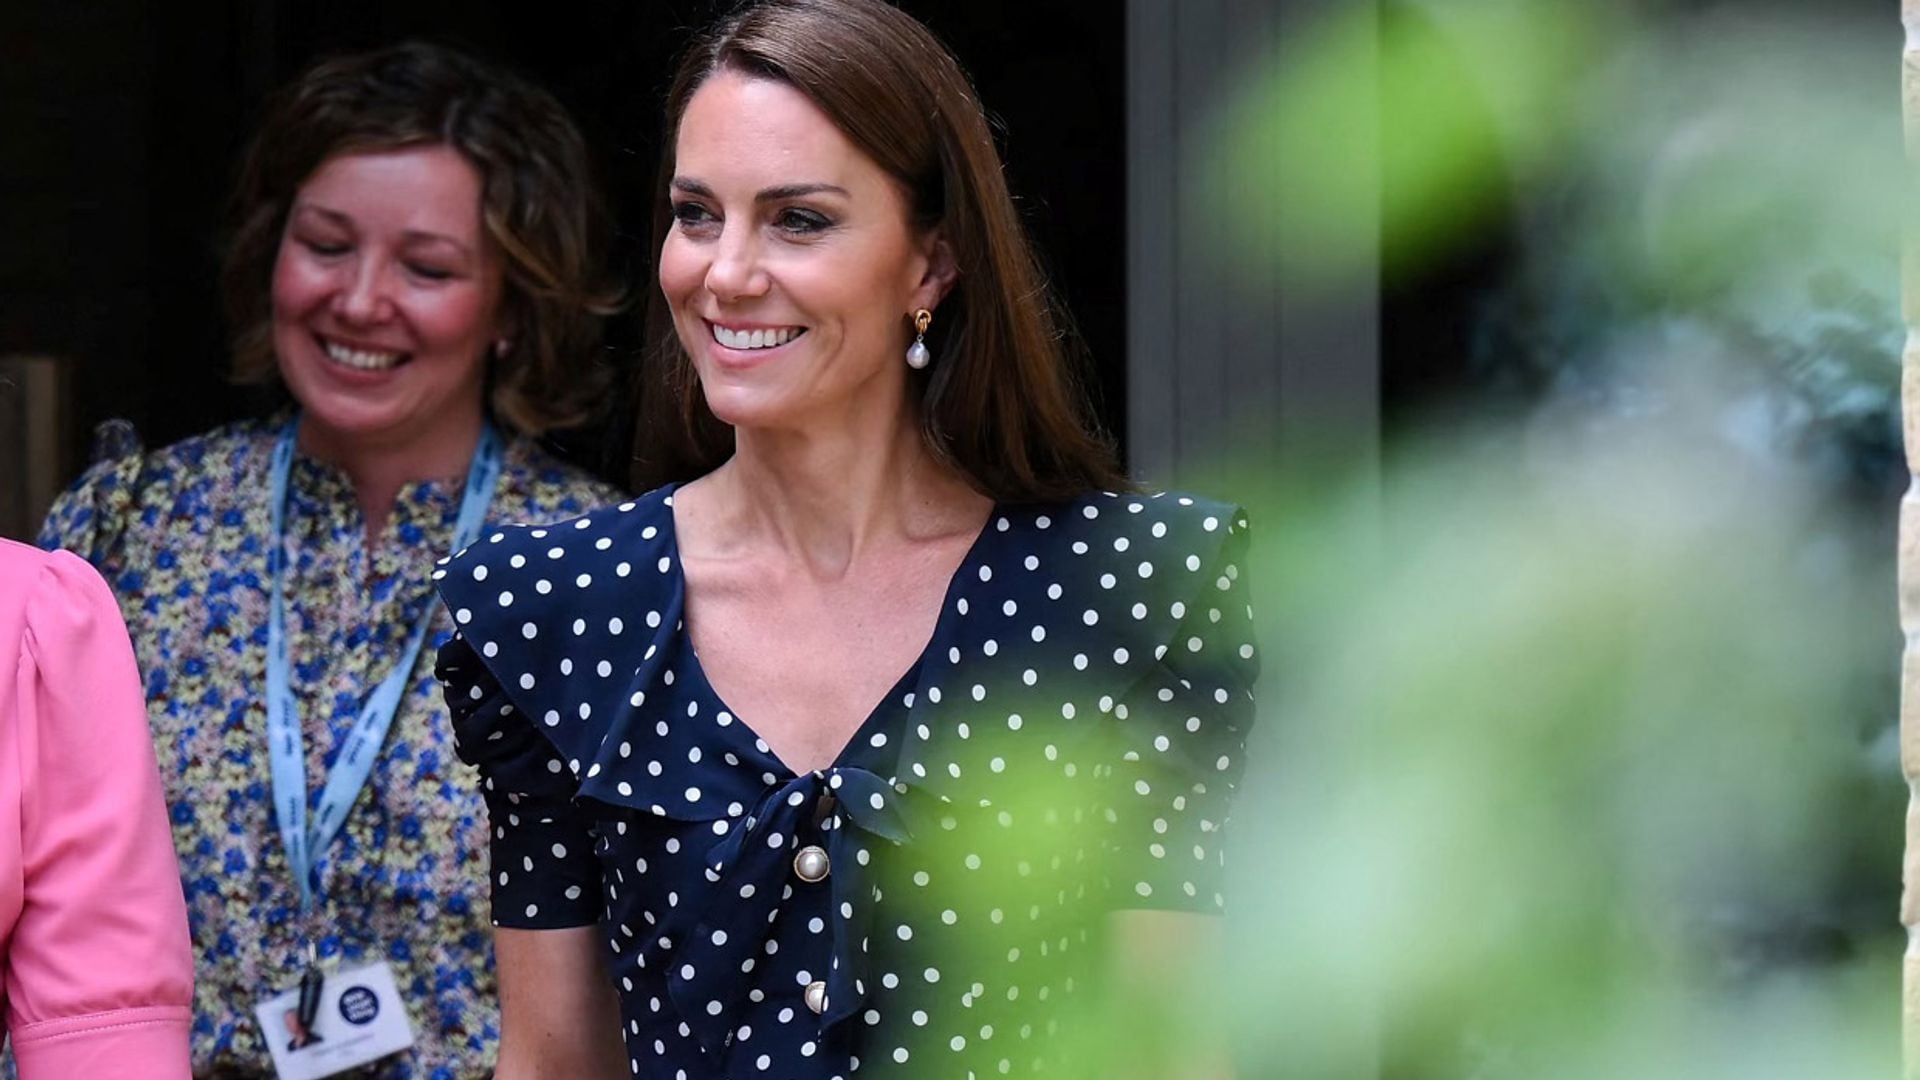 La princesa de Gales recicla su vestido péplum de lunares con unos pendientes de perla barroca